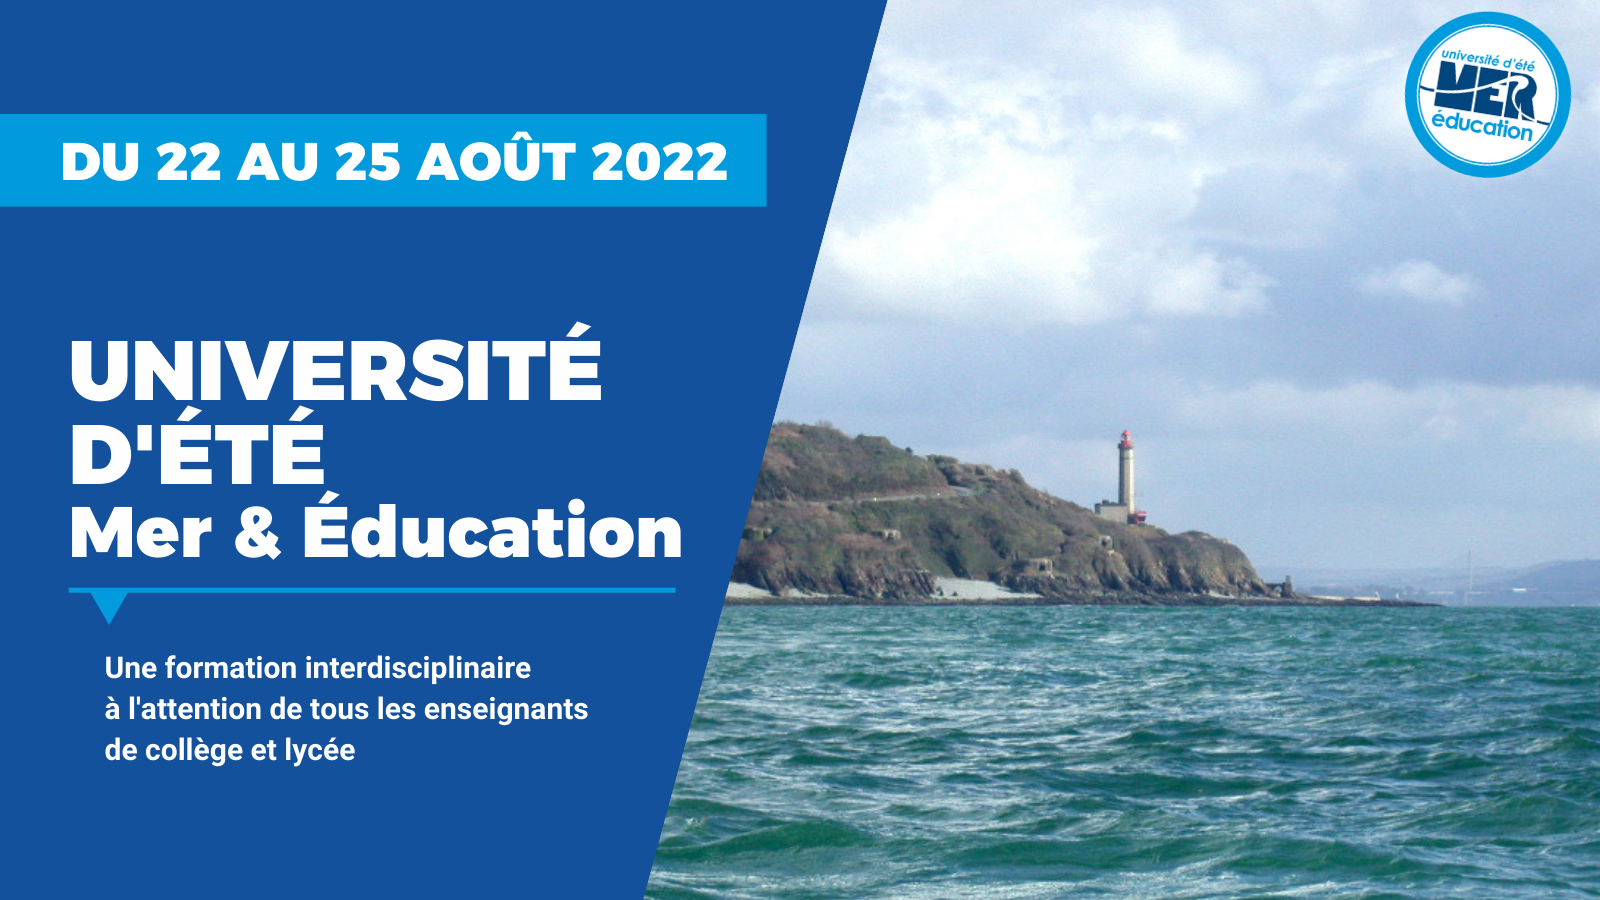 Université d'été Mer & Éducation - Du 22 au 25 août 2022